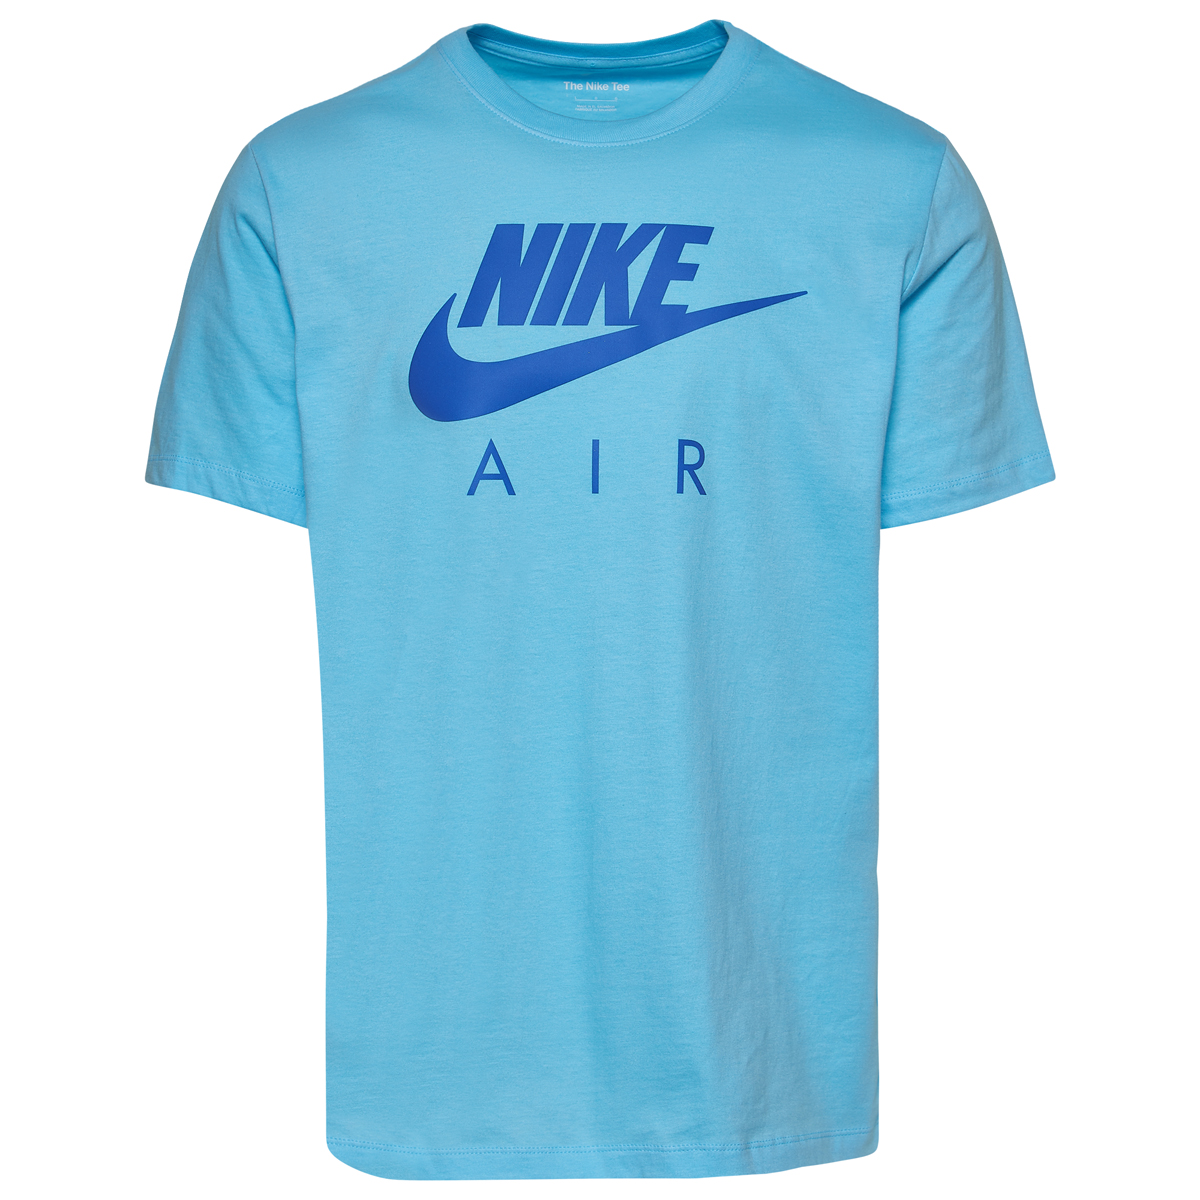 Nike-Air-T-Shirt-Blue-Chill